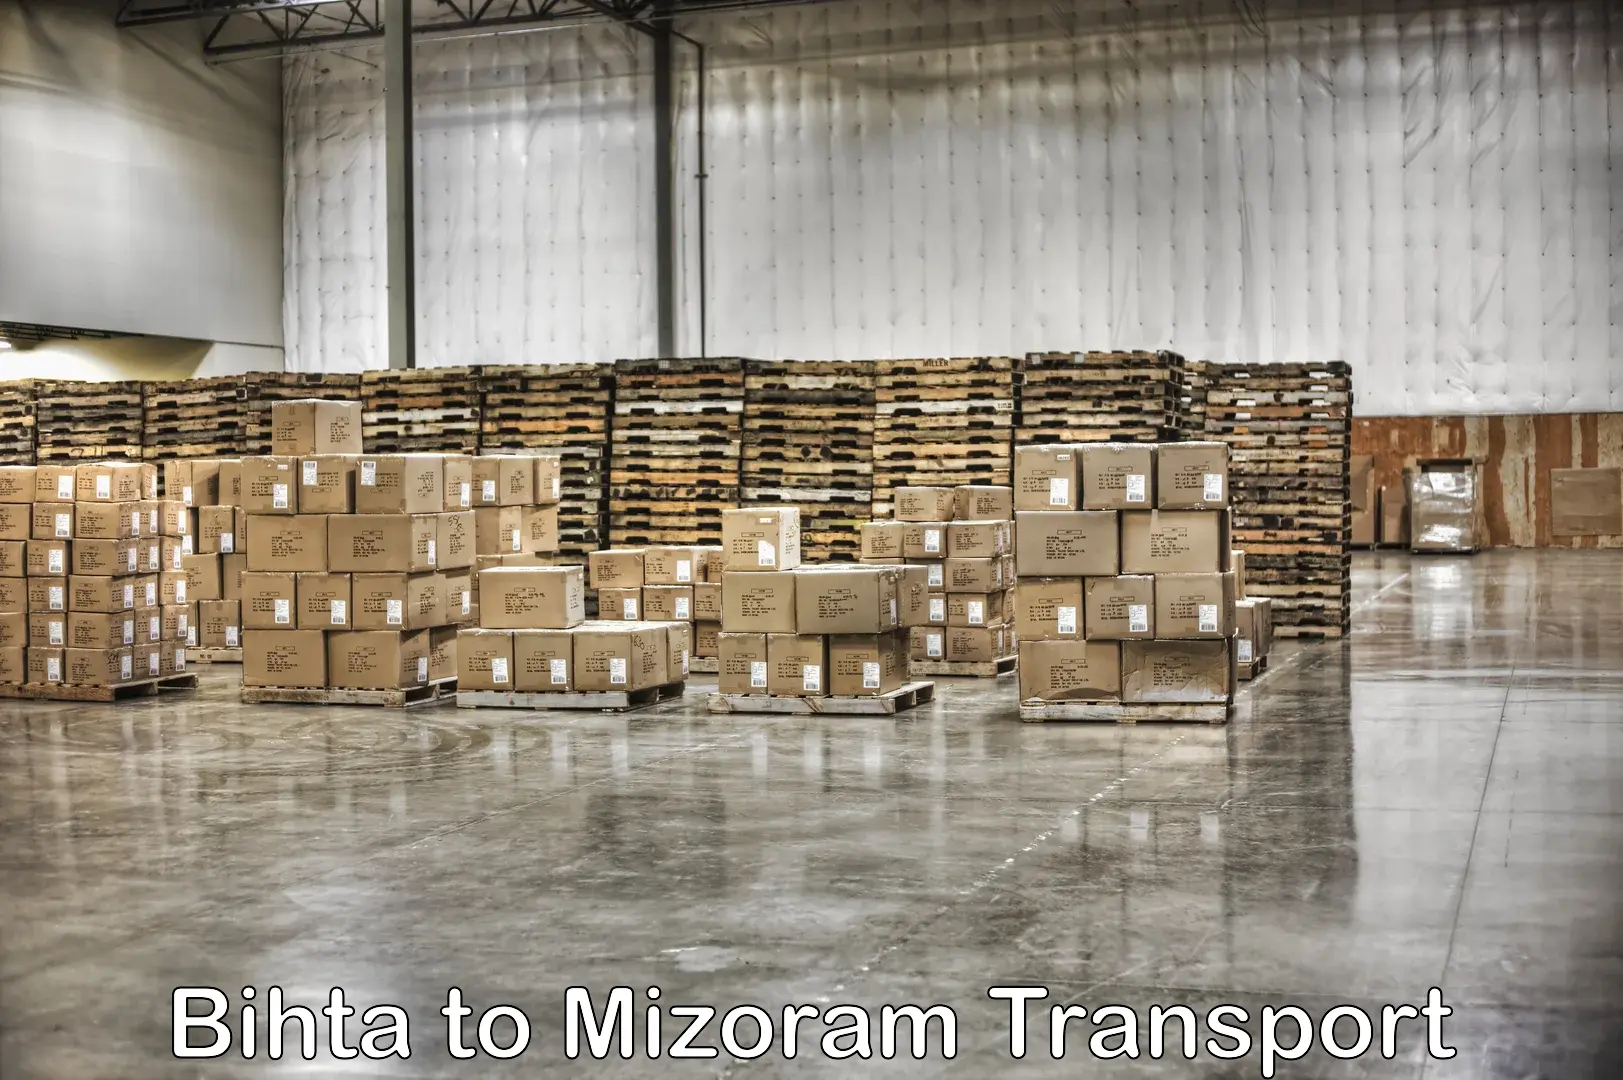 Online transport booking Bihta to Mizoram